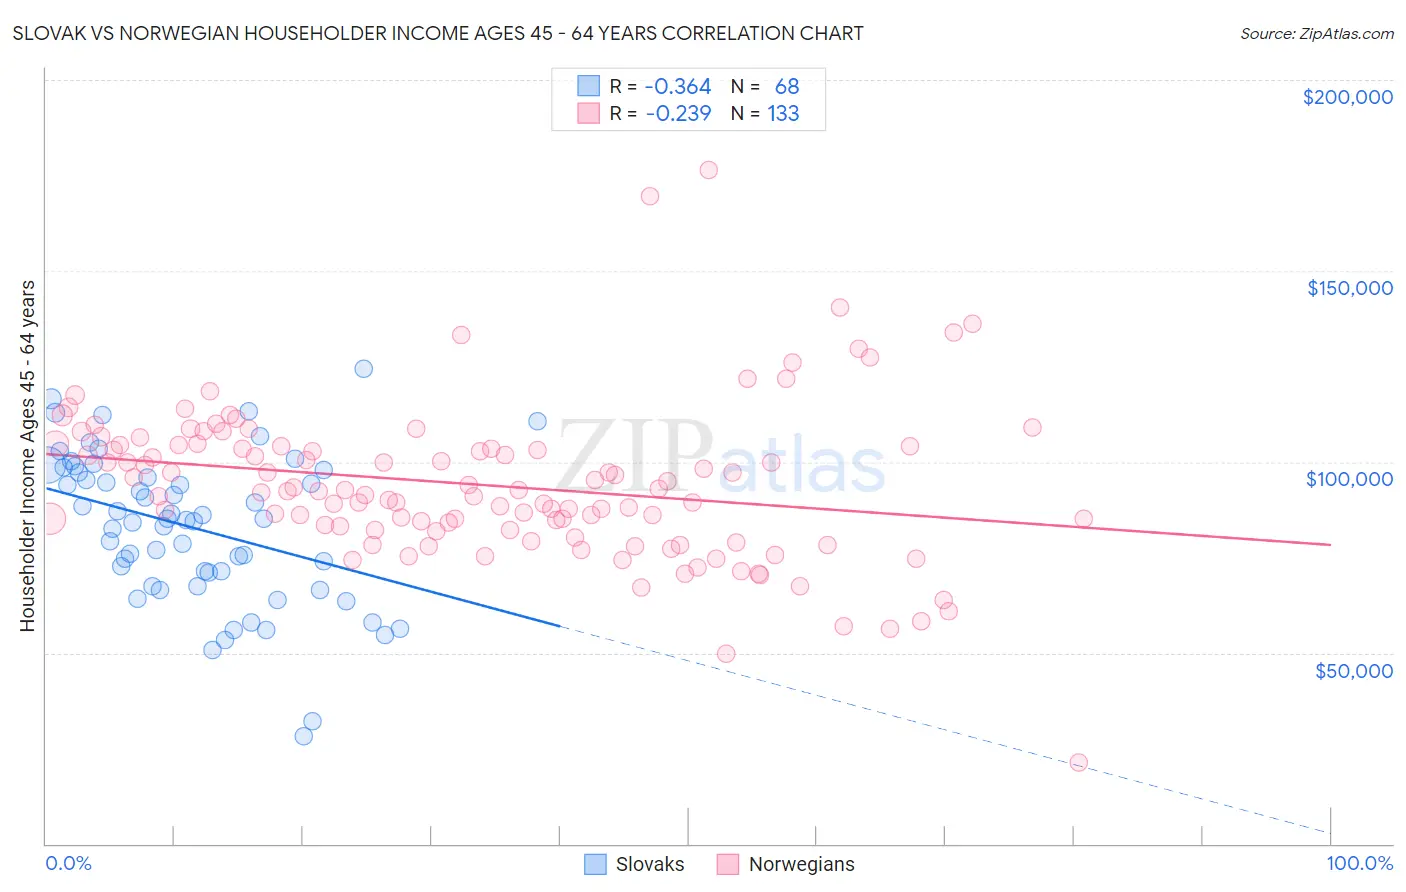 Slovak vs Norwegian Householder Income Ages 45 - 64 years